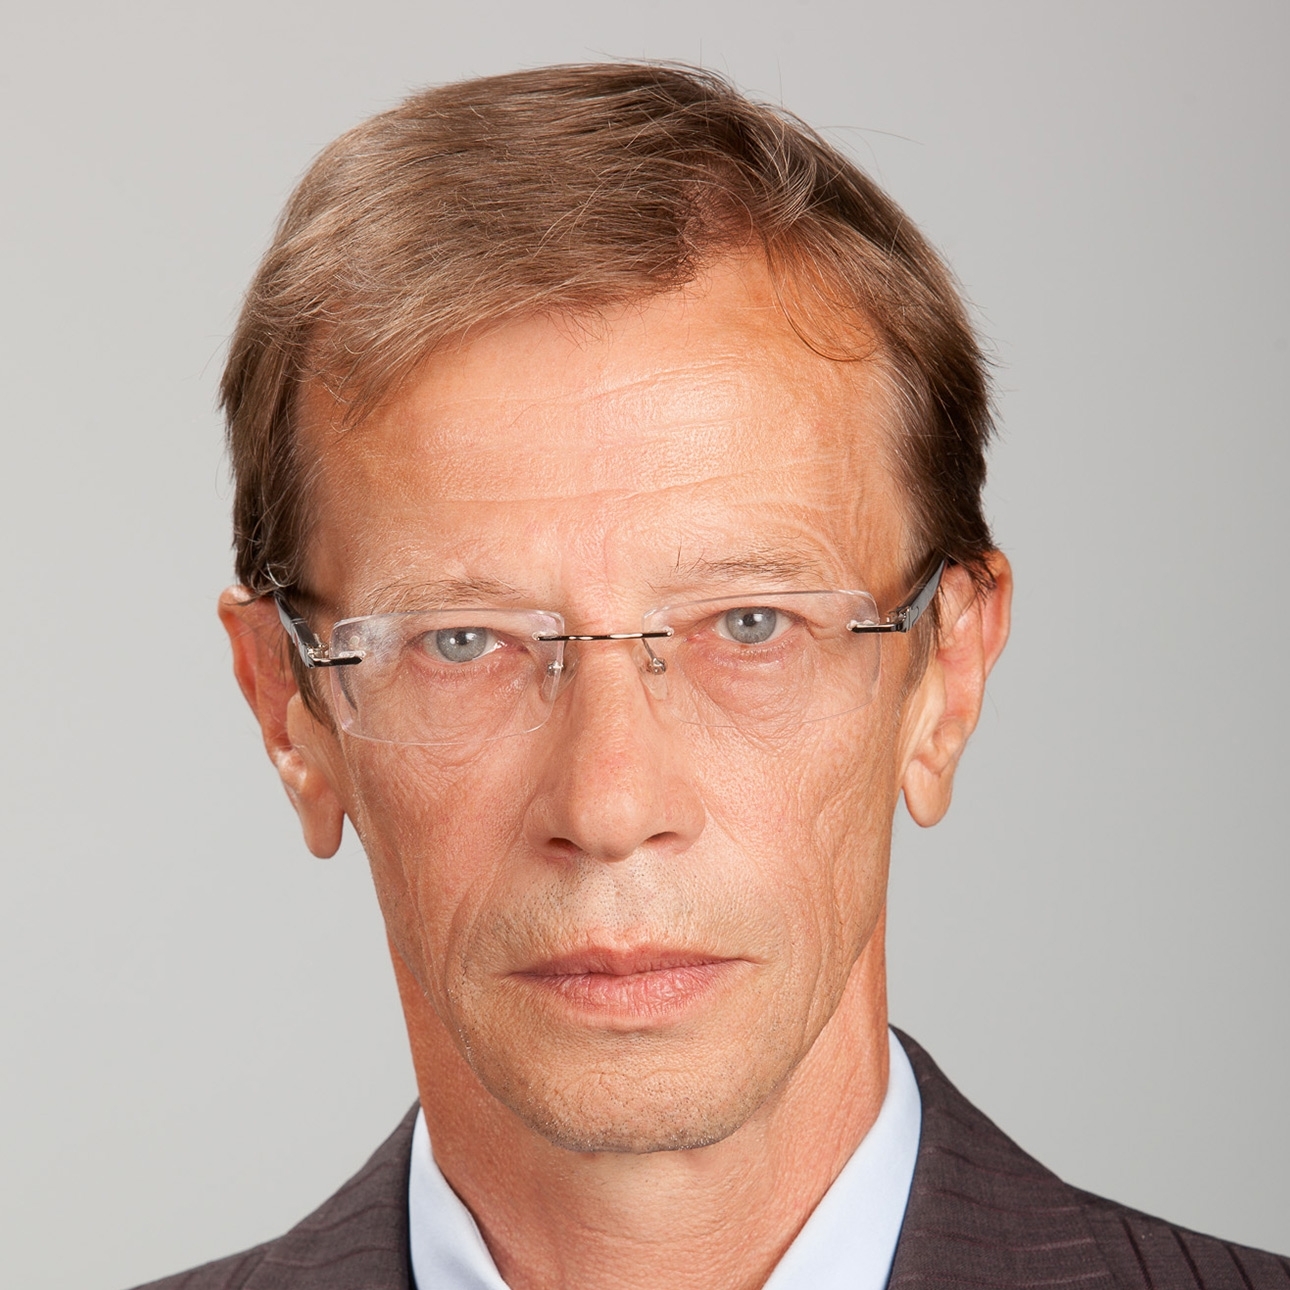 Mr. Vitaly L. Okulov